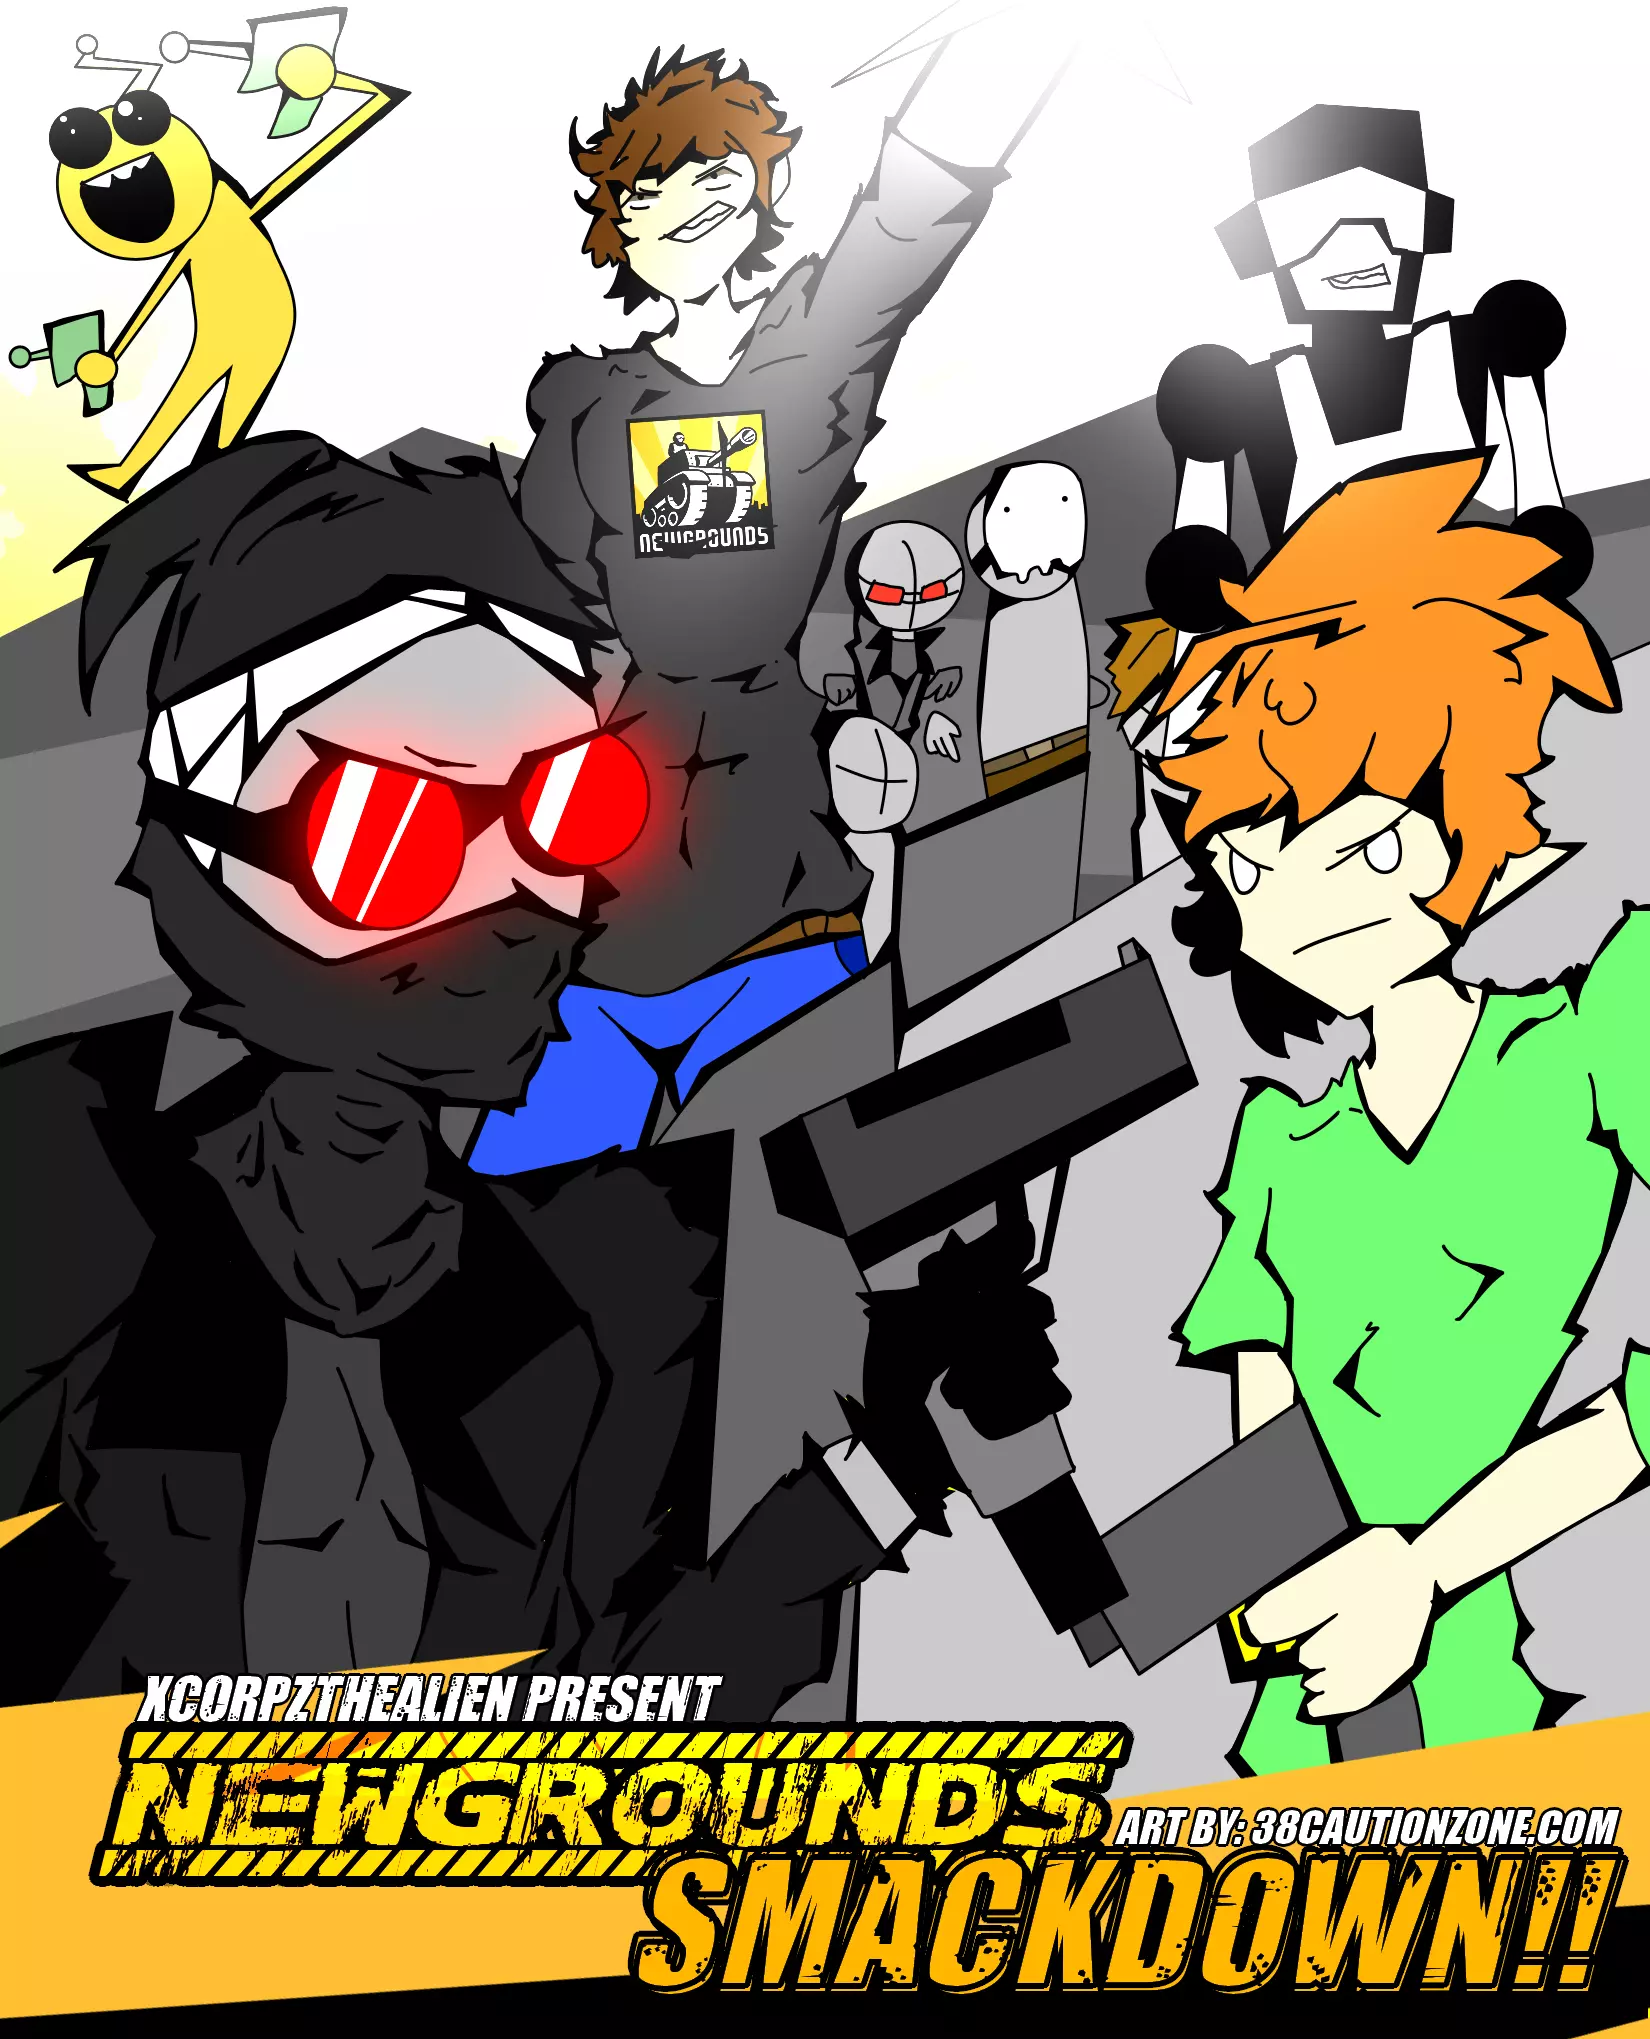 My fan made madness combat character by NewsleroniNewgrounds on Newgrounds